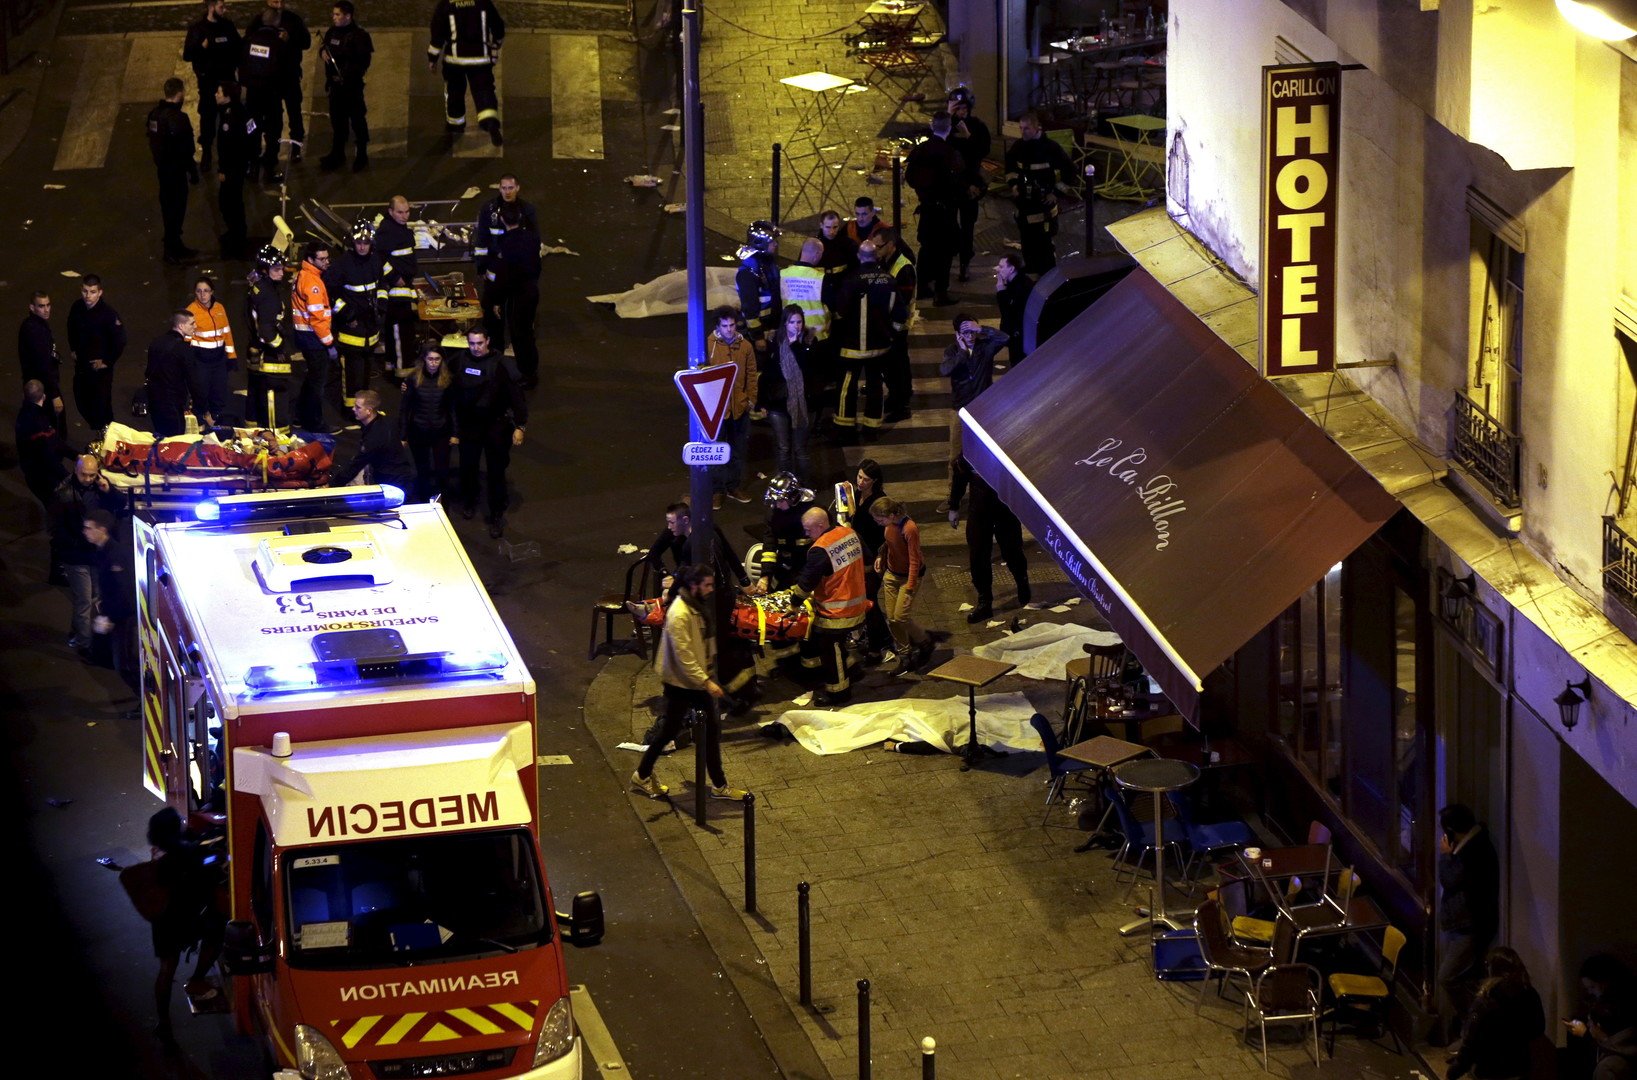 باريس تعلن حالة طوارئ والحداد العام بعيد تفجيرات دامية أوقعت 129 قتيلا (فيديو)